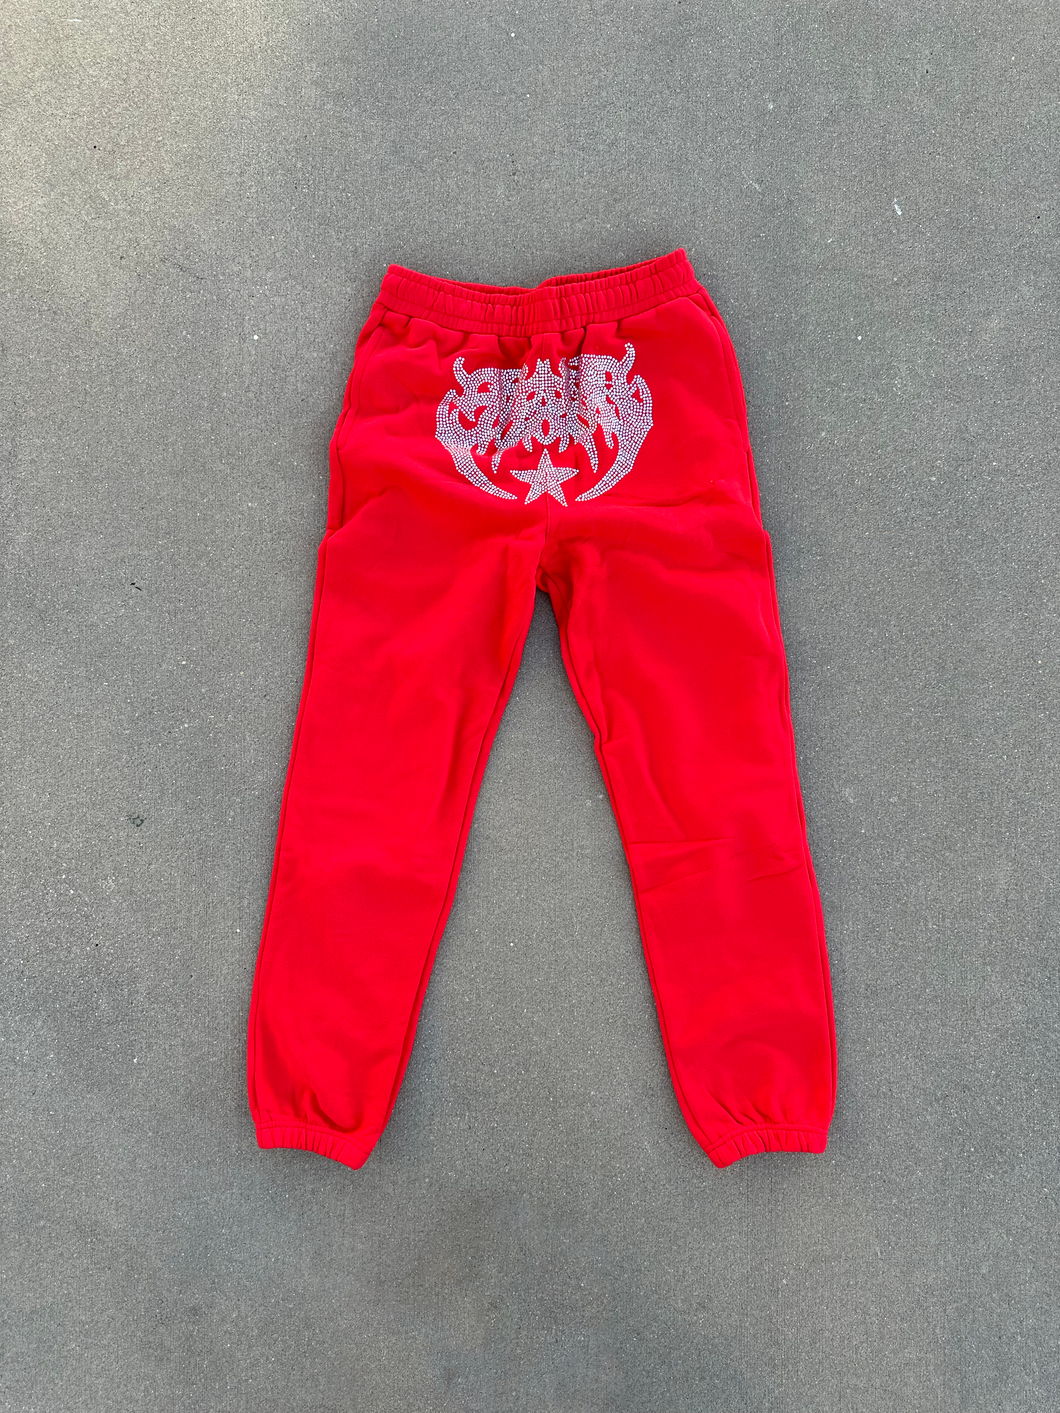 Red Steezo Rhinestone Sweatpants